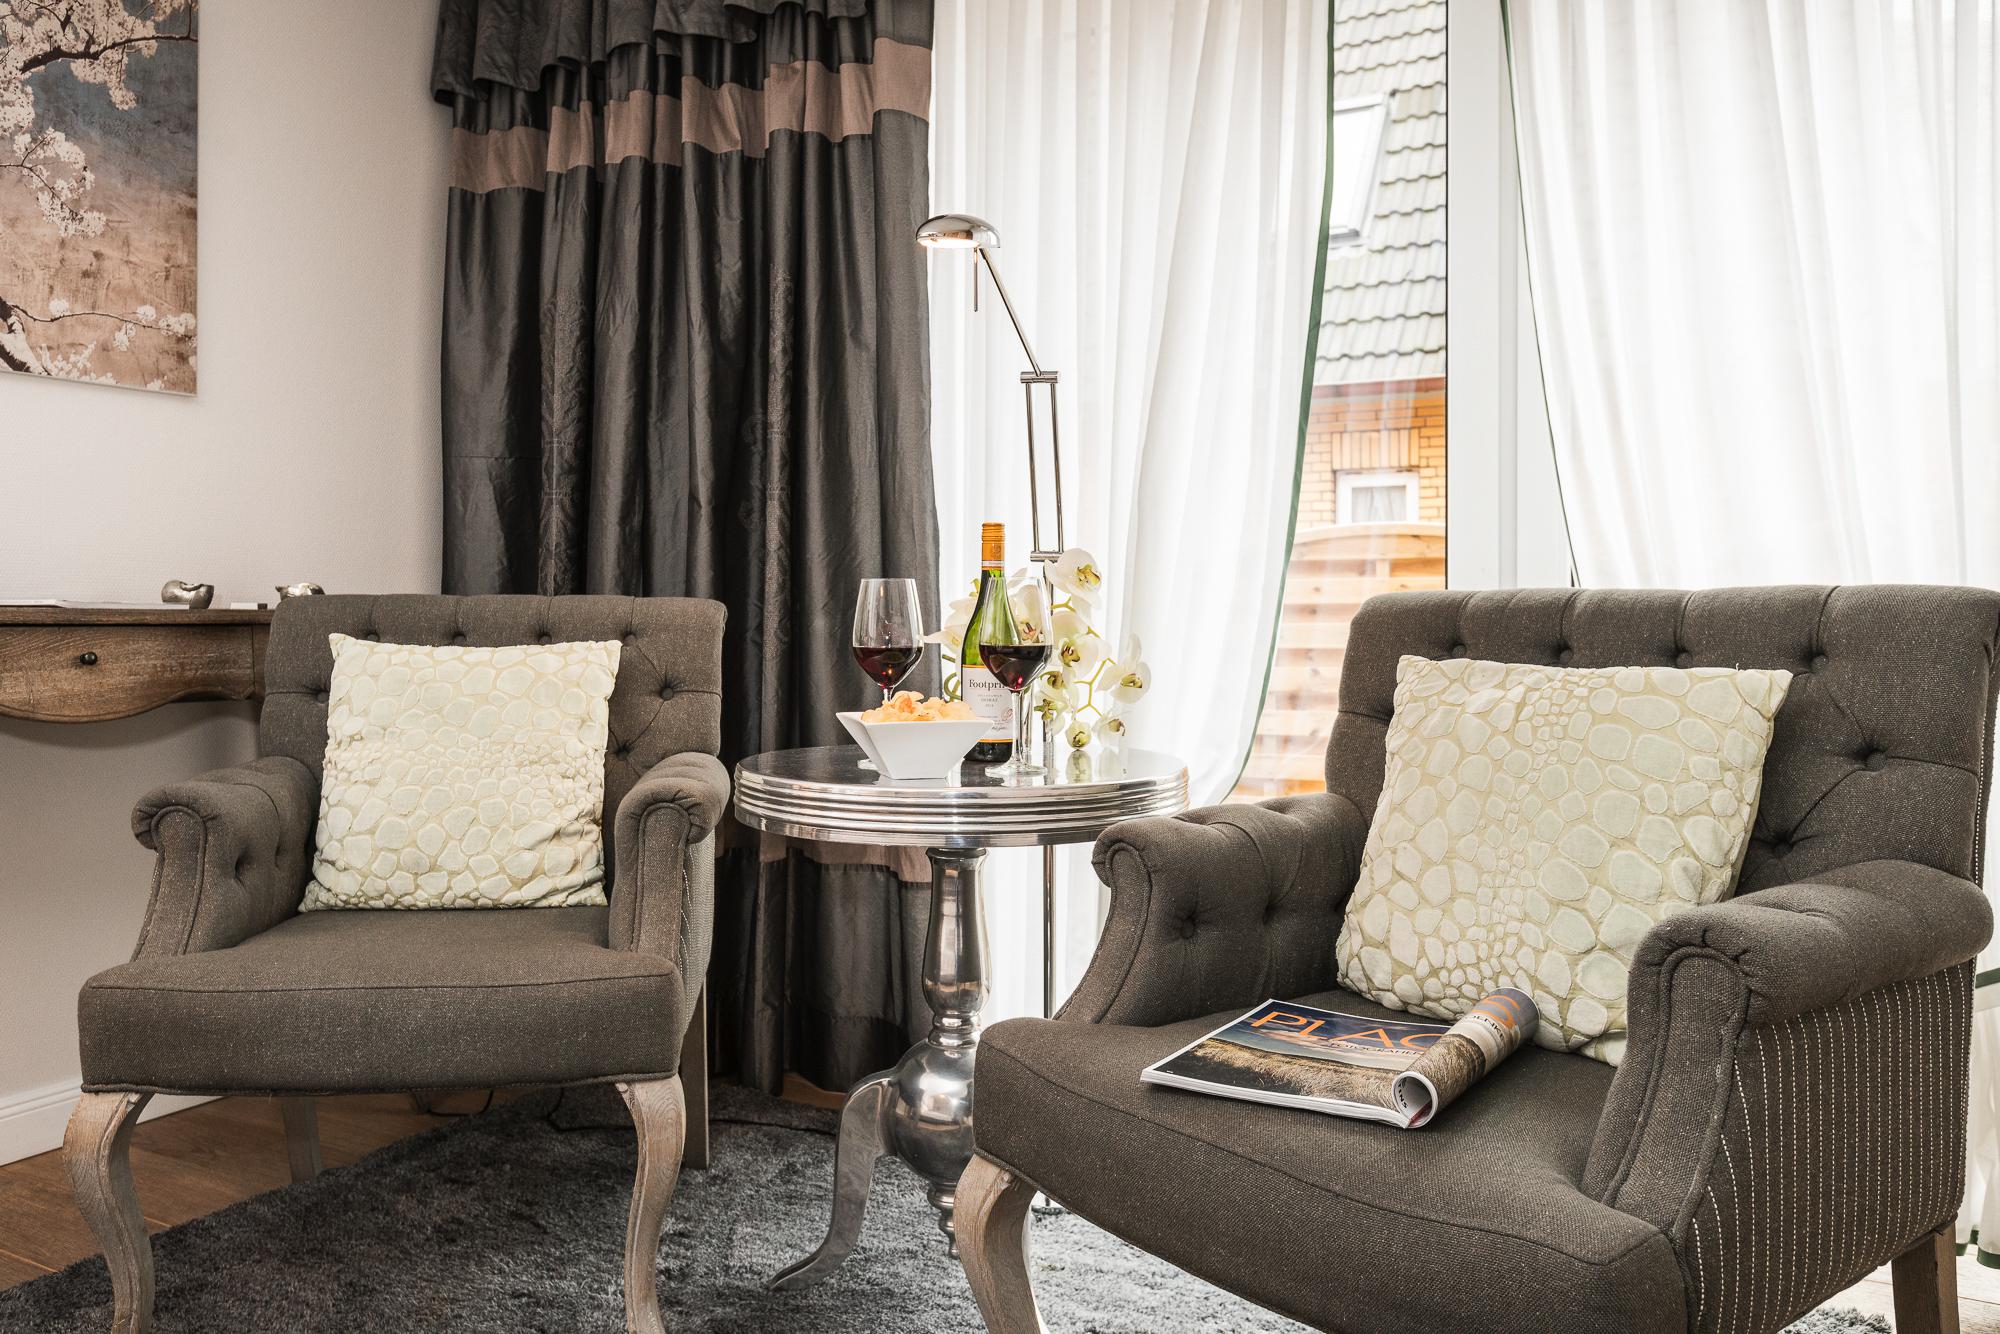 Doppelzimmer mit zwei englischen Sesseln, Beistelltisch und Blumen im Hotel Landhaus Sylter Hahn in Westerland auf Sylt.